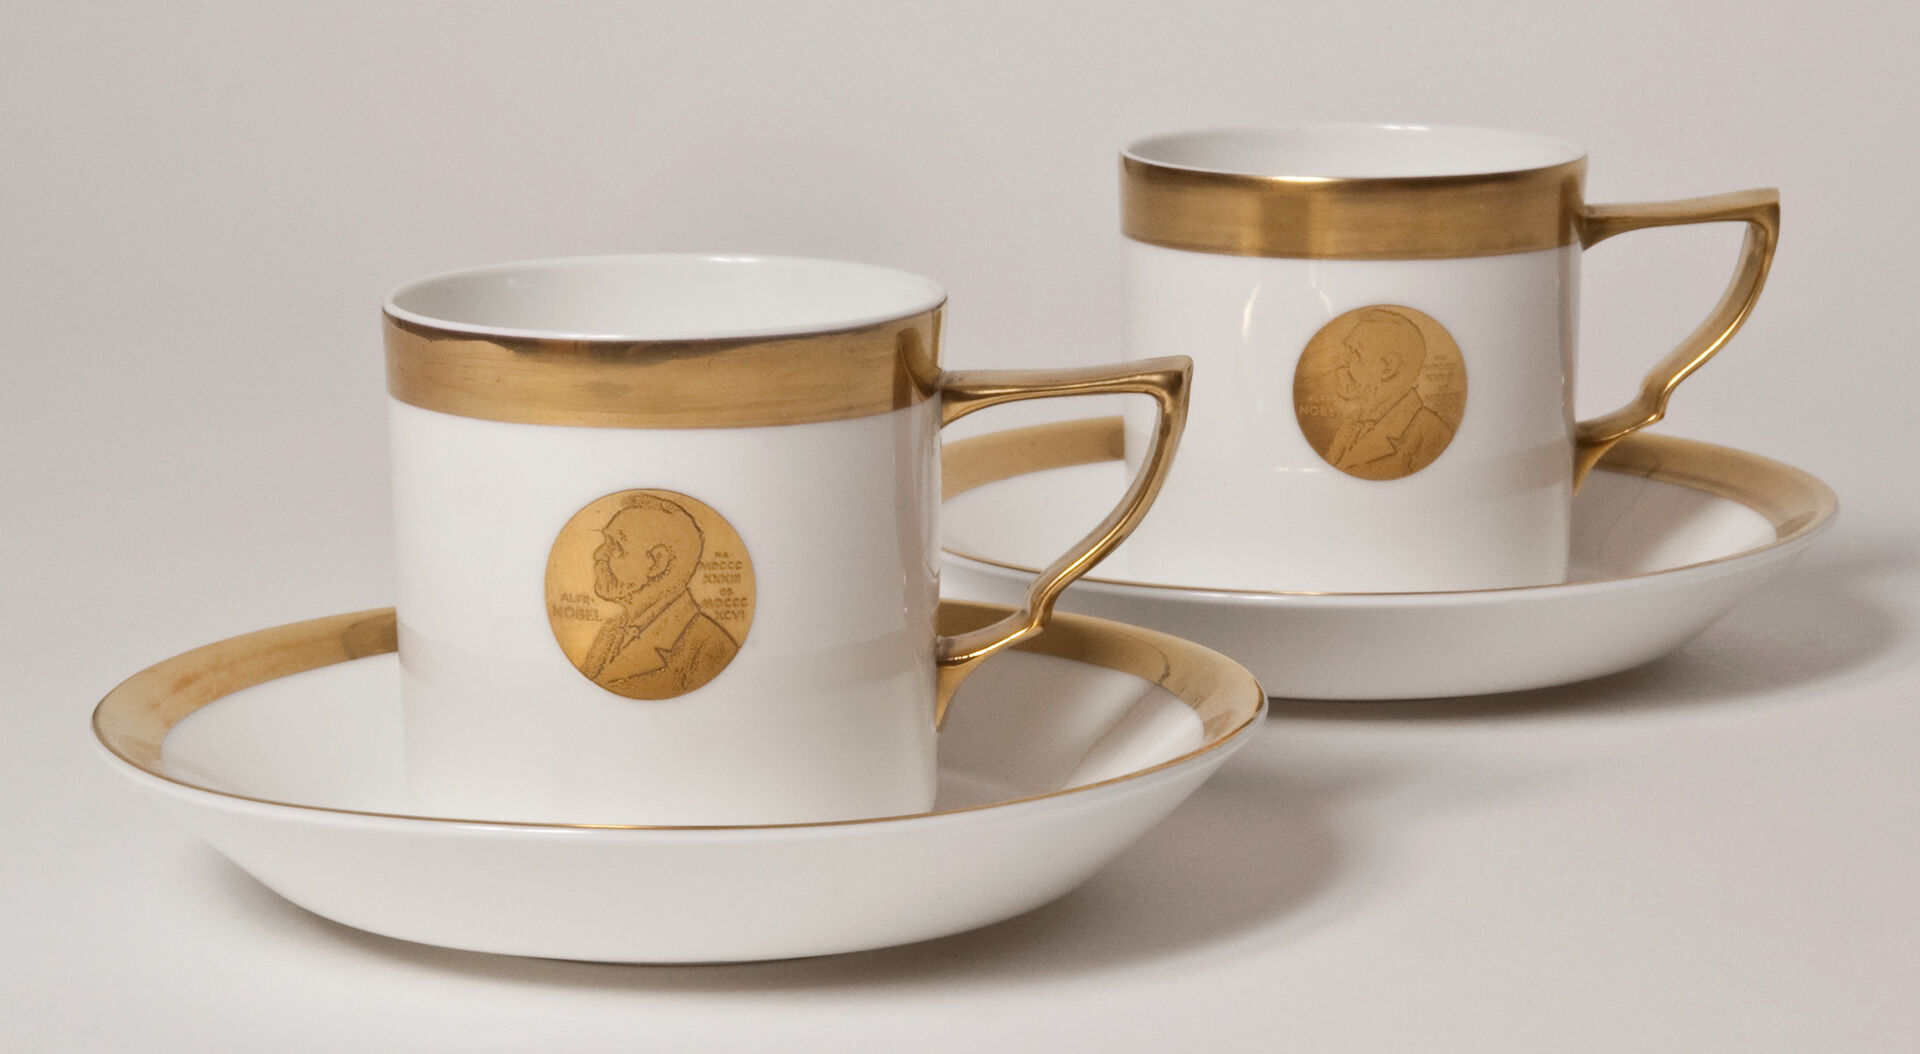 Två kaffekoppar i vitt och guld med en guldmedaljong föreställande Alfred Nobel mitt på koppen.